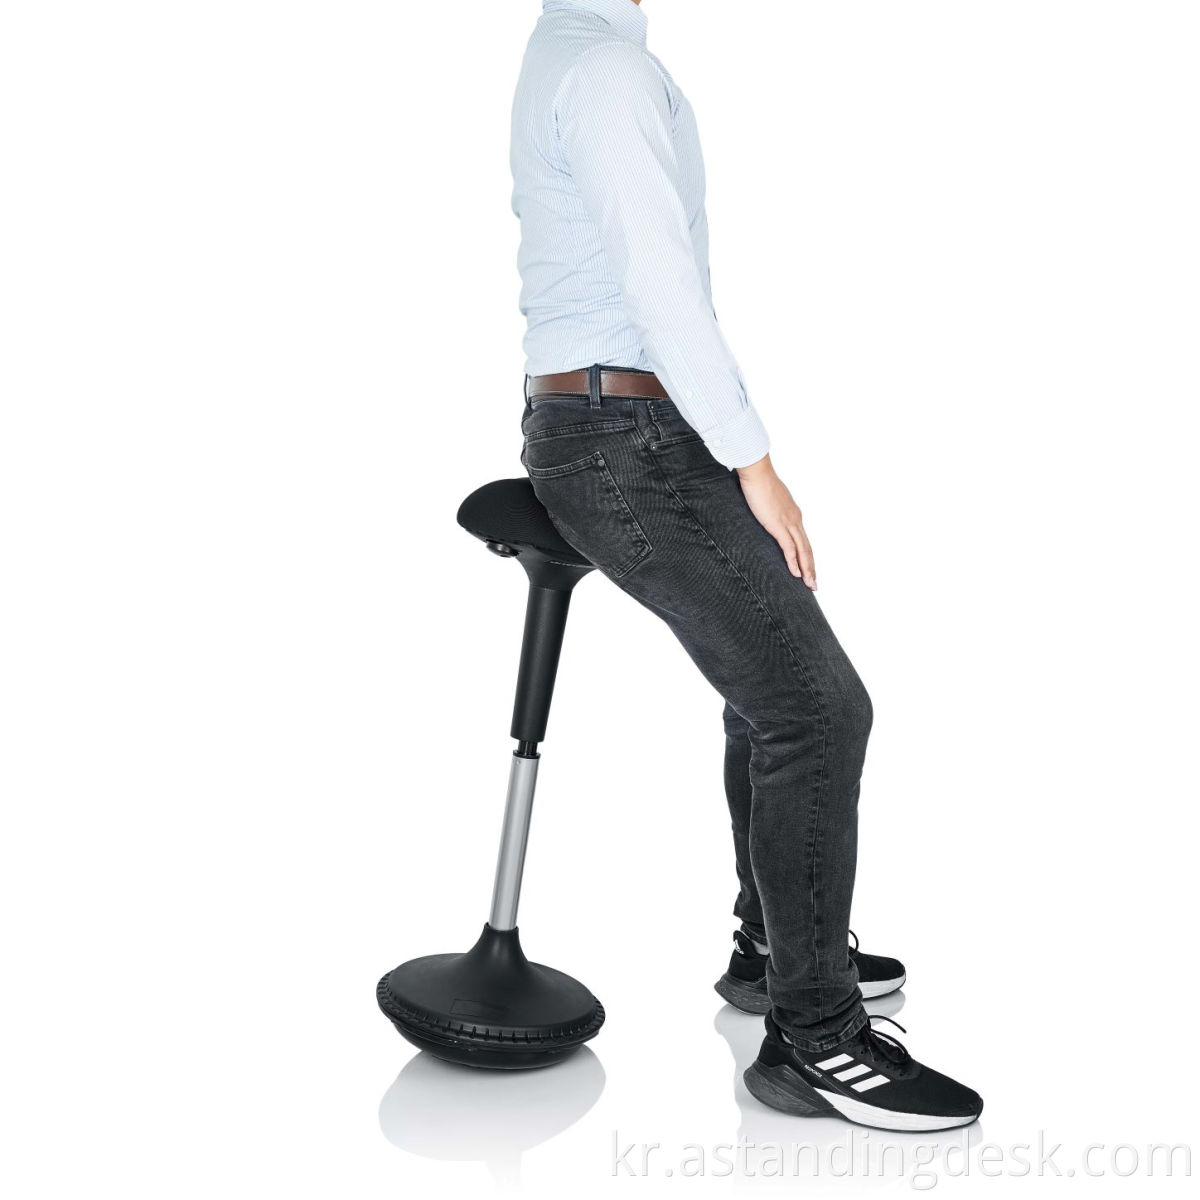 고품질 사무용 가구 높이 조절 가능한 인체 공학적 액티브 앉기 흔들림 의자 의자